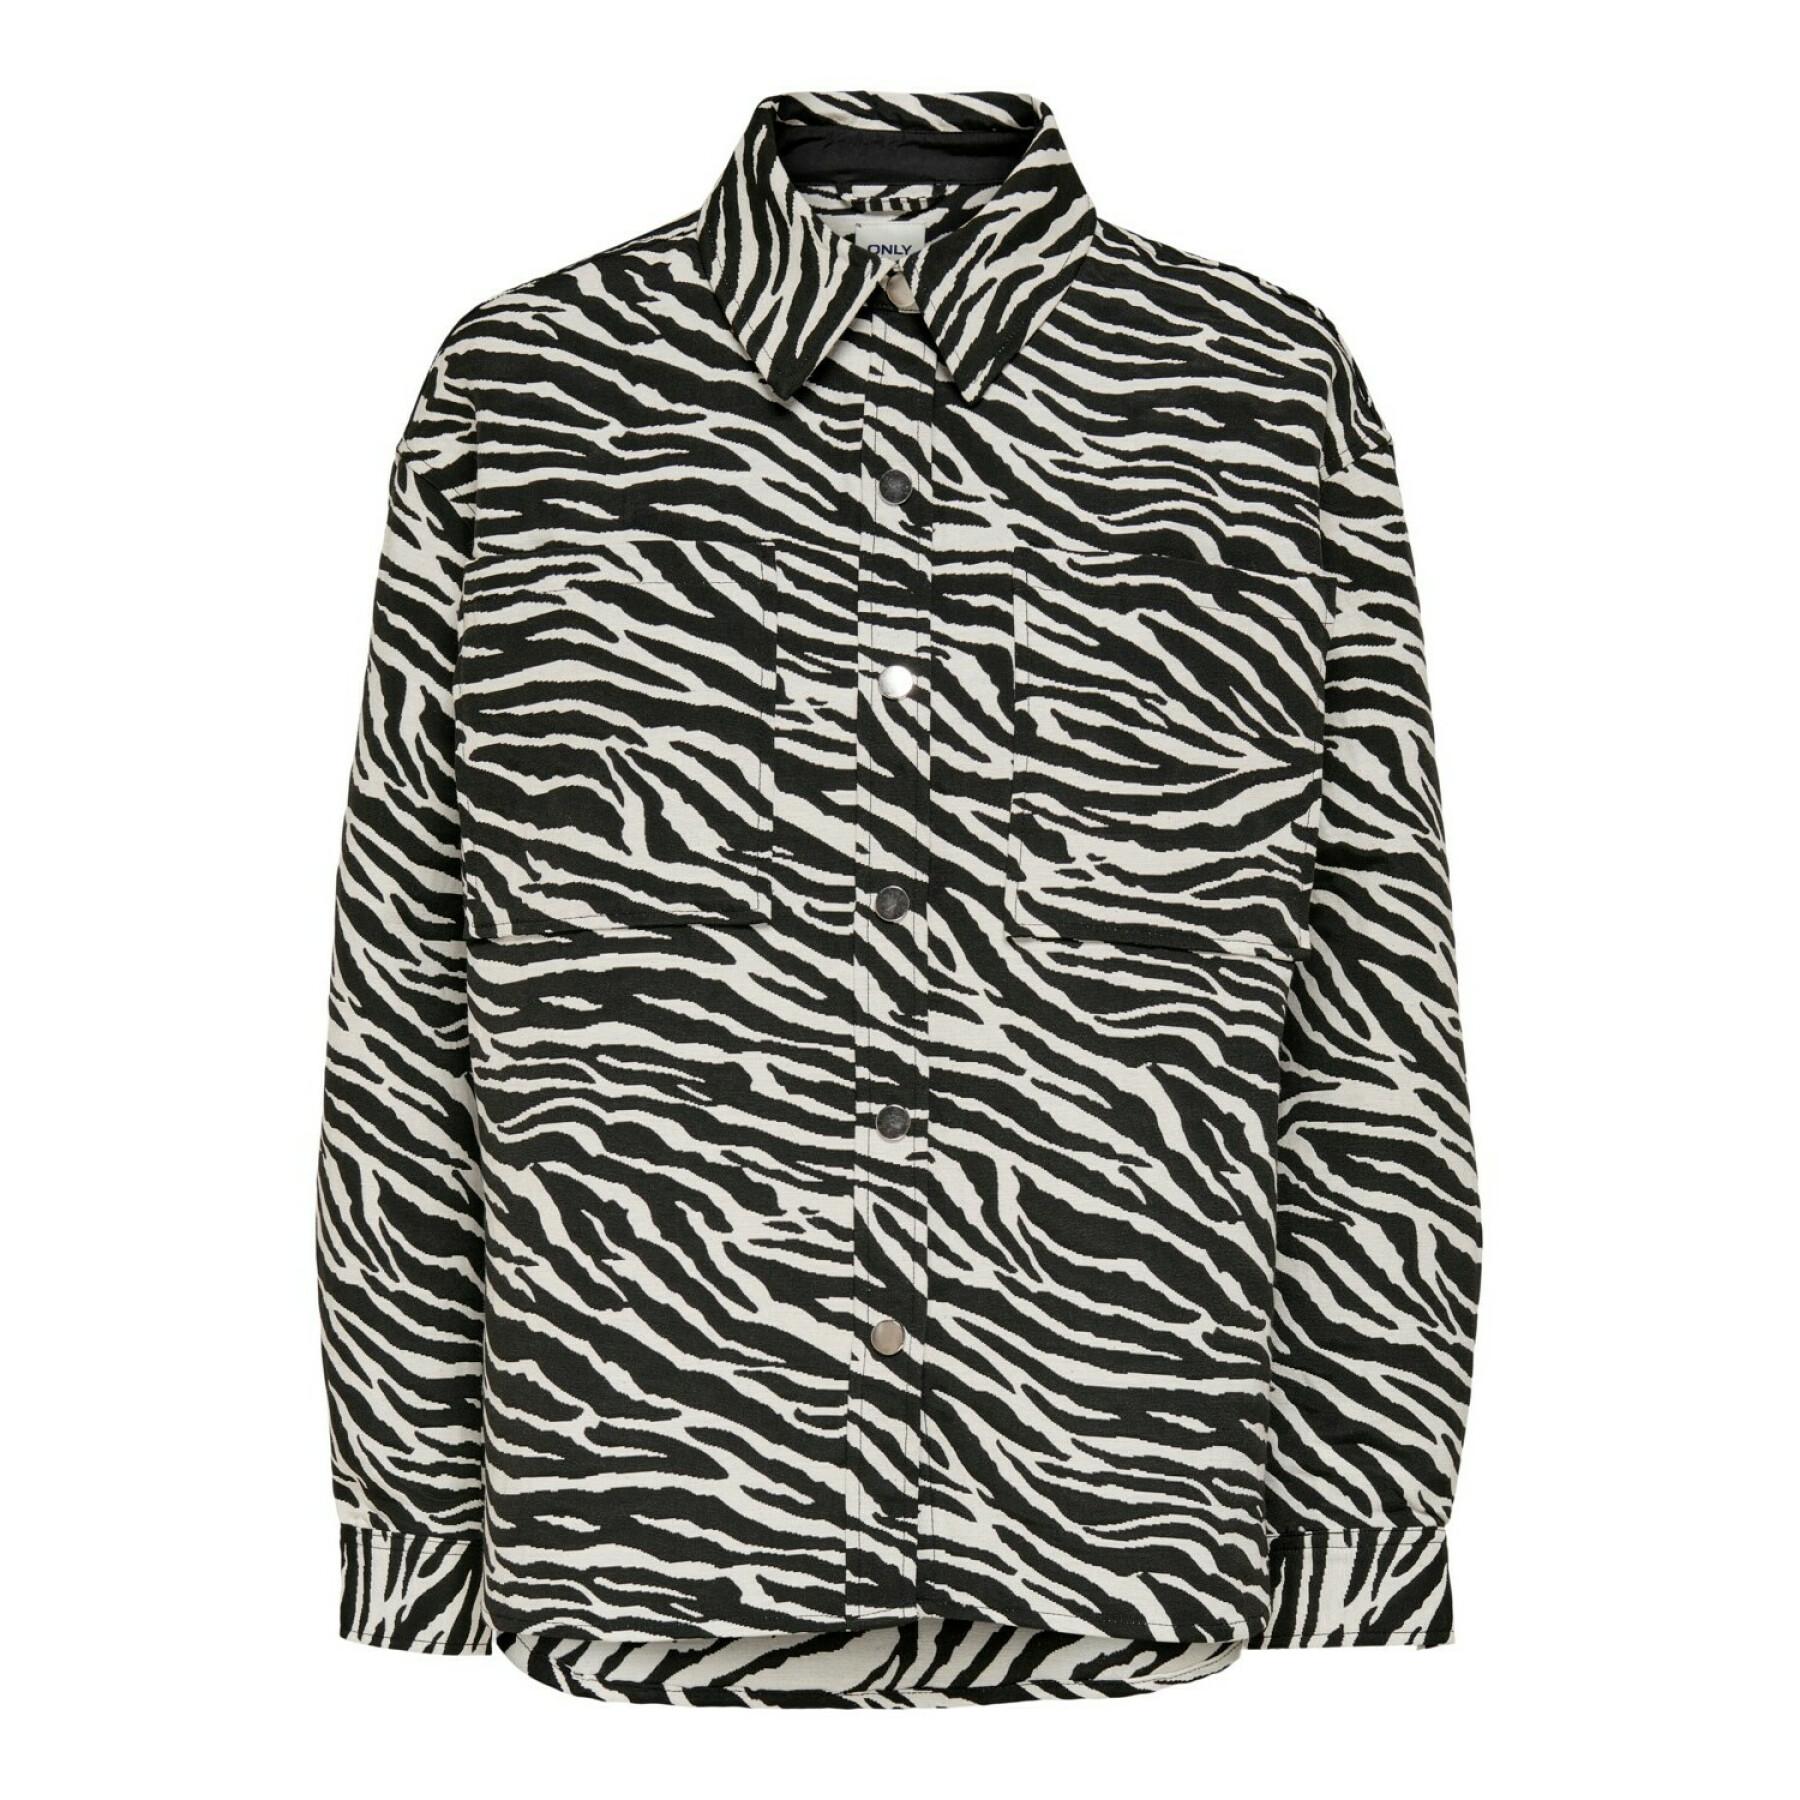 Women's jacket Only onlnoelle zebra shacket